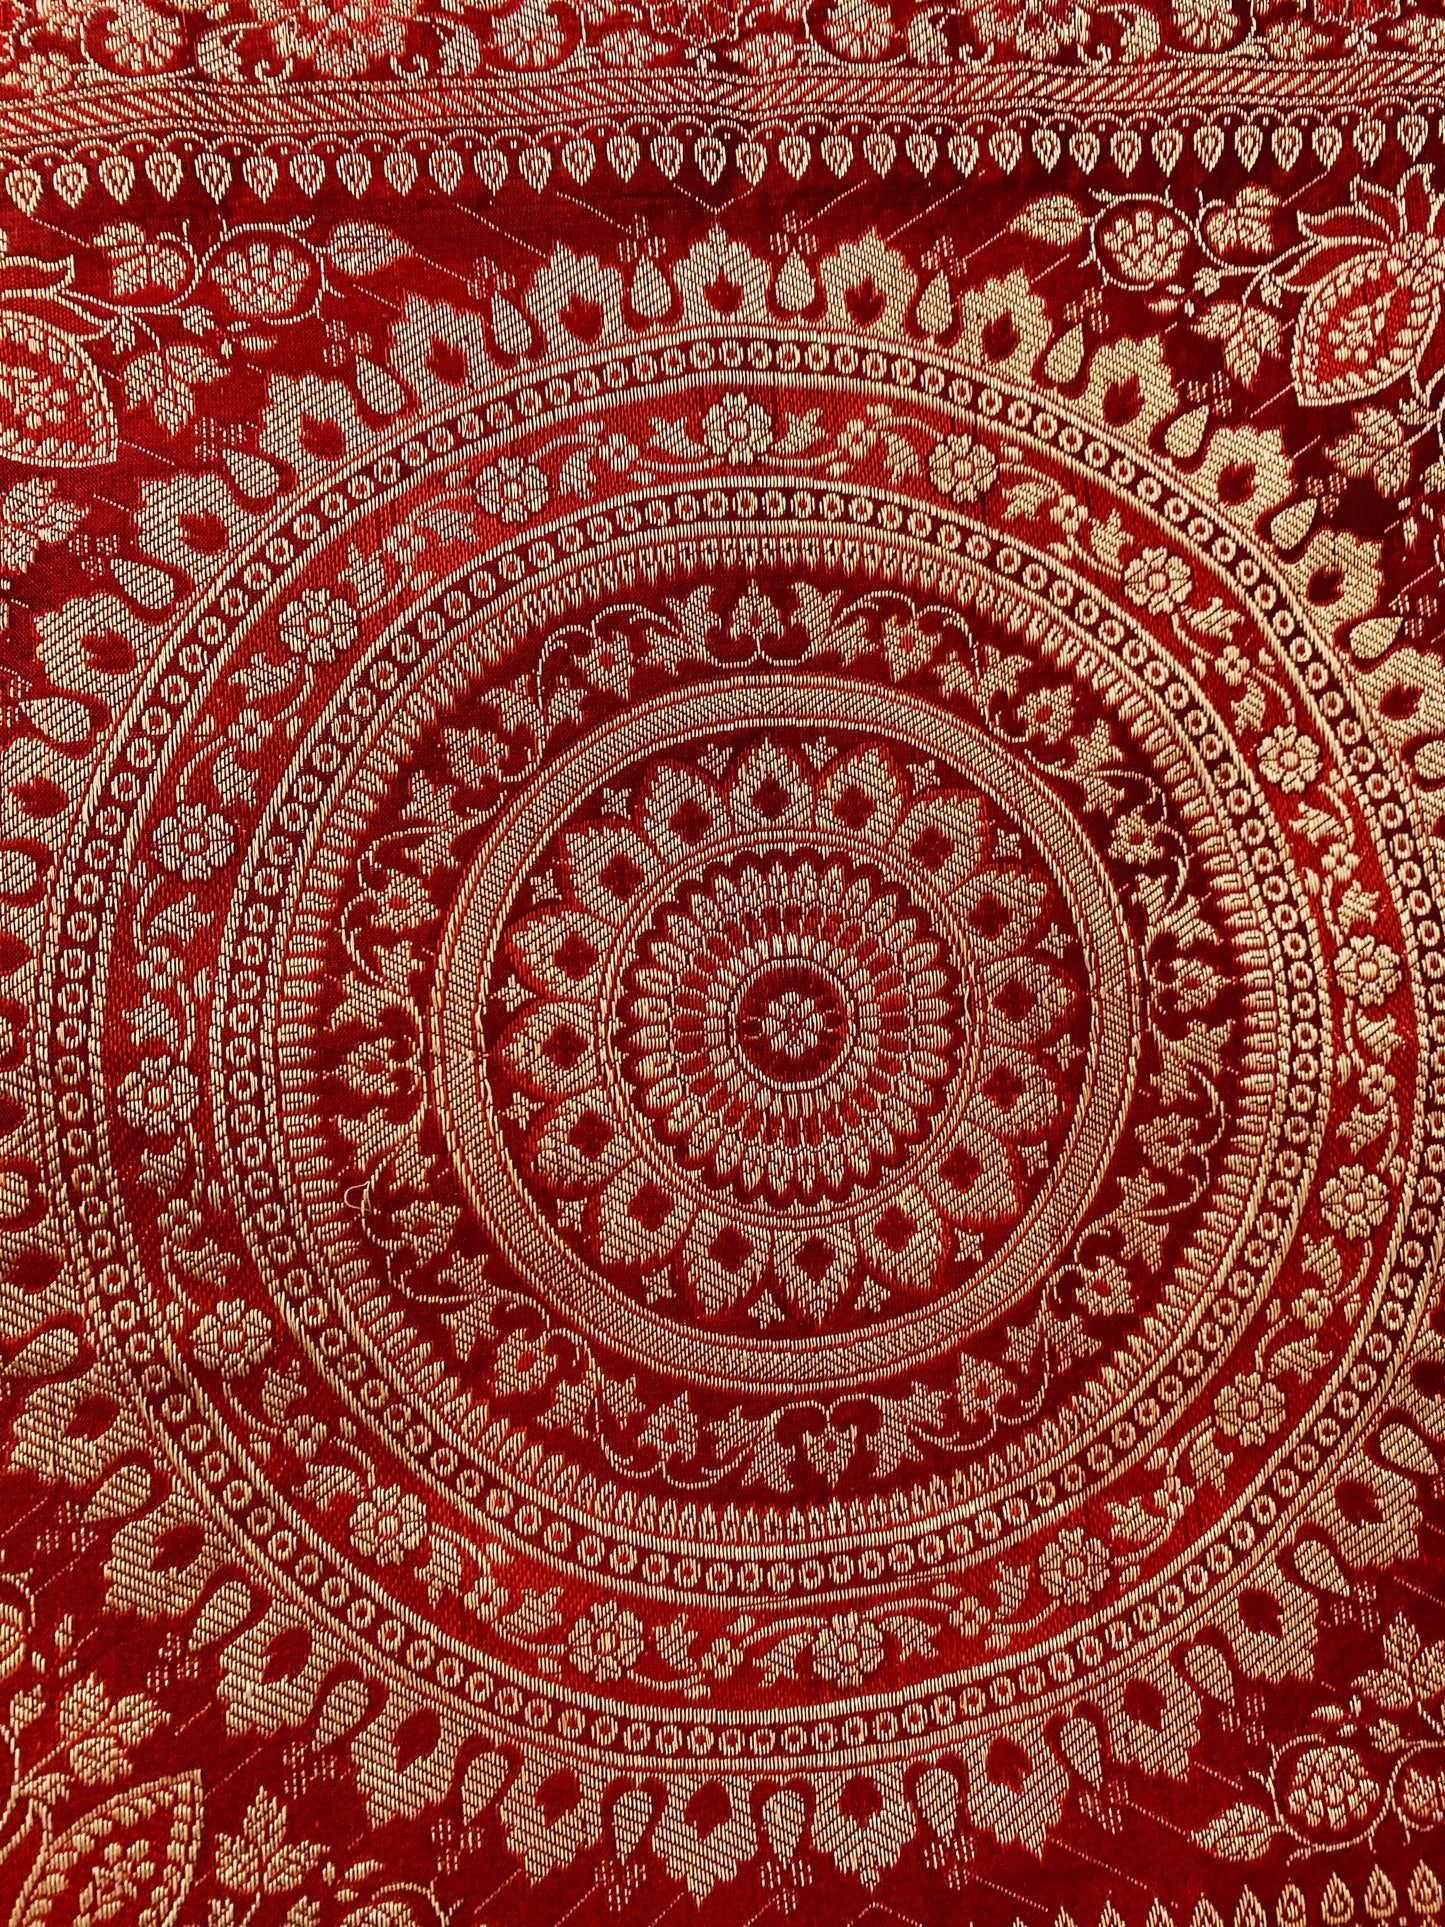 Boho style handcrafted ethnic Mandala cushion cover #792010